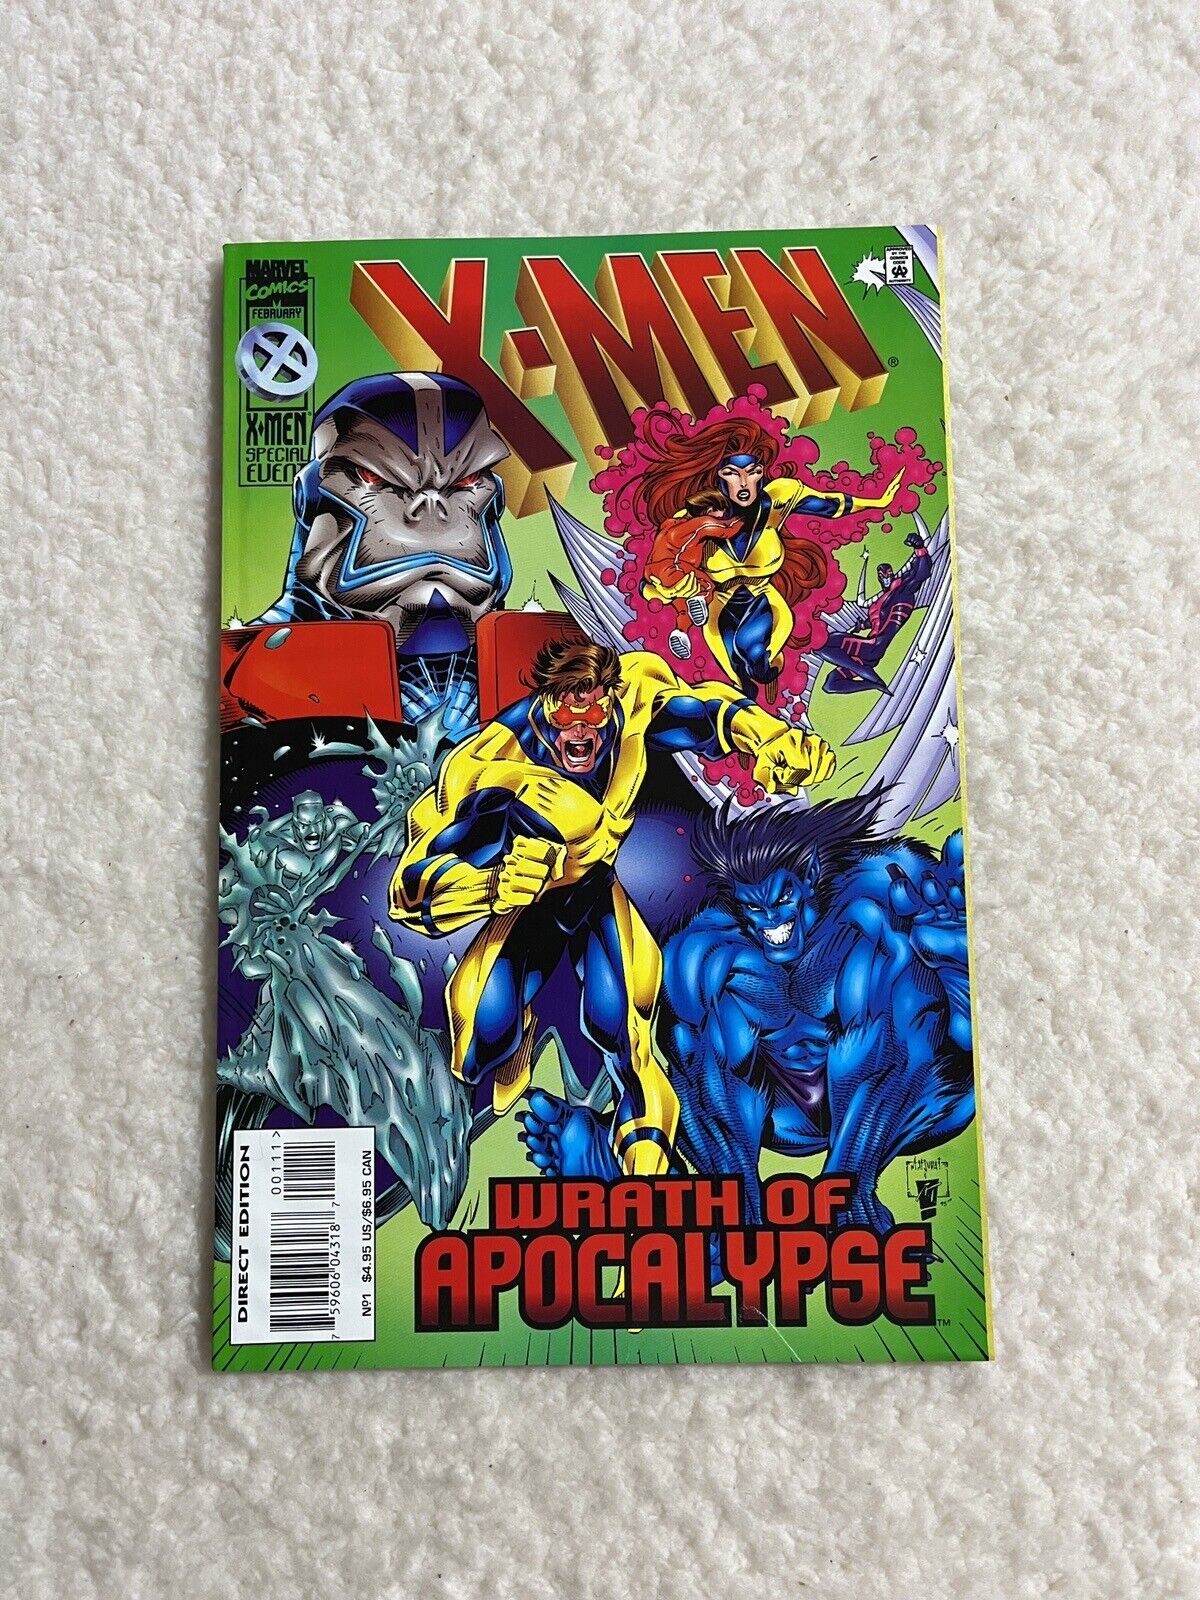 X-Men: Wrath of Apocalypse 1996 Marvel Comics Trade Paperback